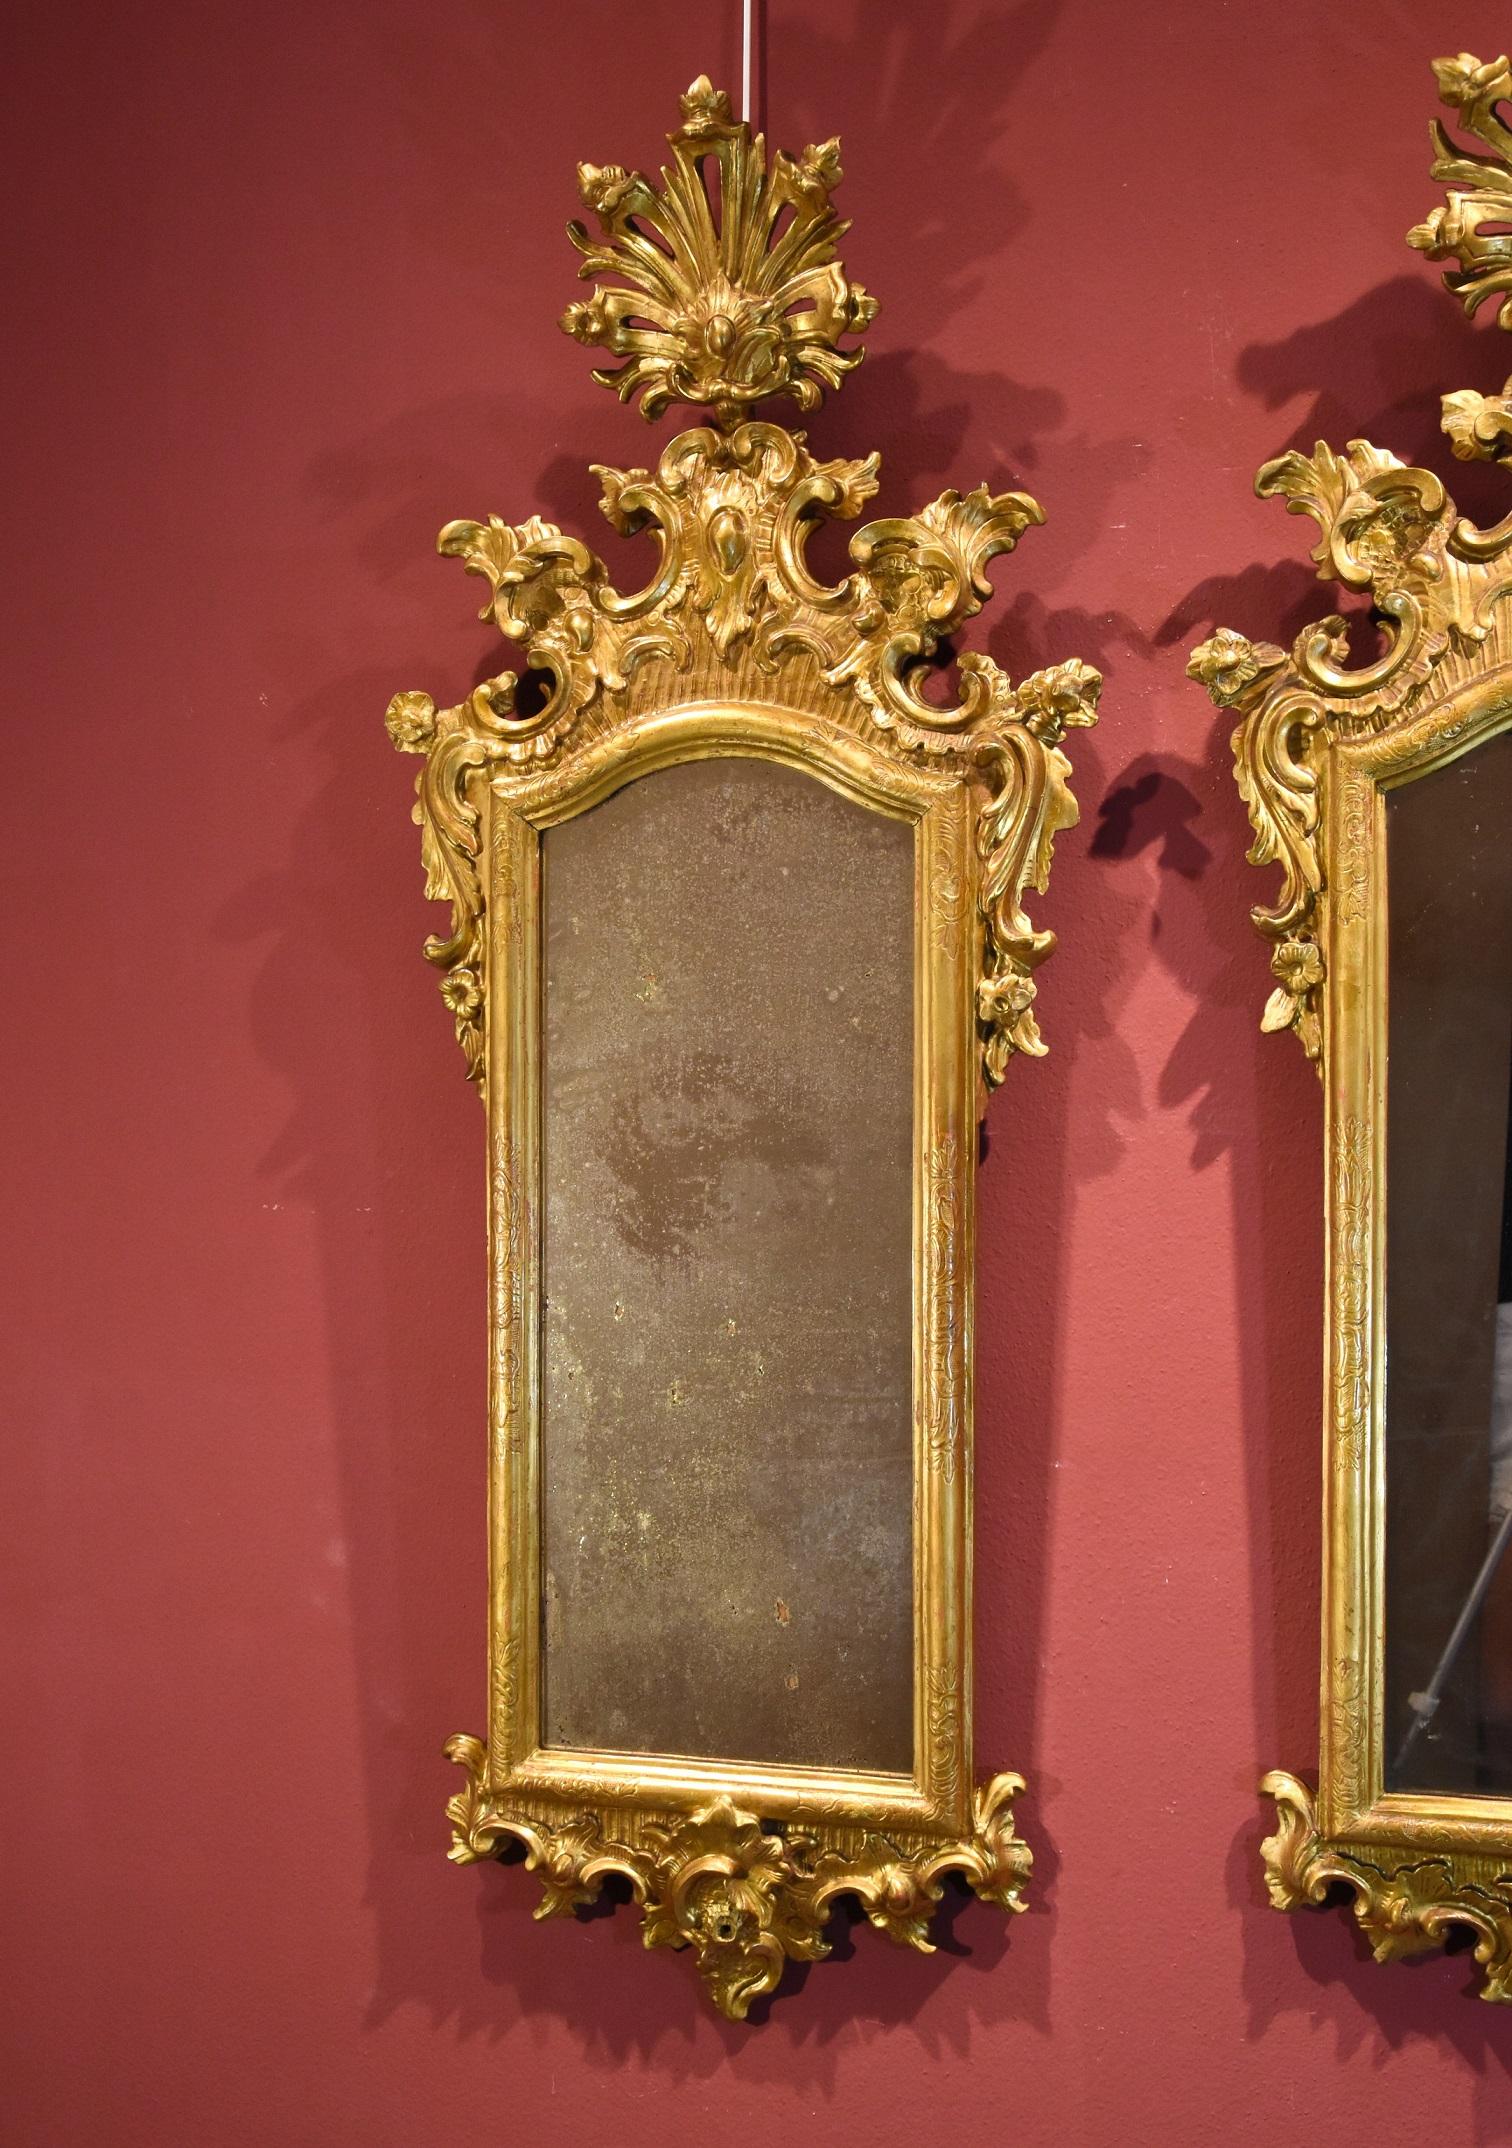 Antichità Castelbarco SRLS est fière de présenter :

Paire de miroirs (Italie, Venise) 18e siècle

Bois sculpté et doré
Miroir ancien en verre argenté au mercure
Dimensions Maximum : Hauteur cm. 129, Largeur cm. 50

Paire de miroirs Louis XV de